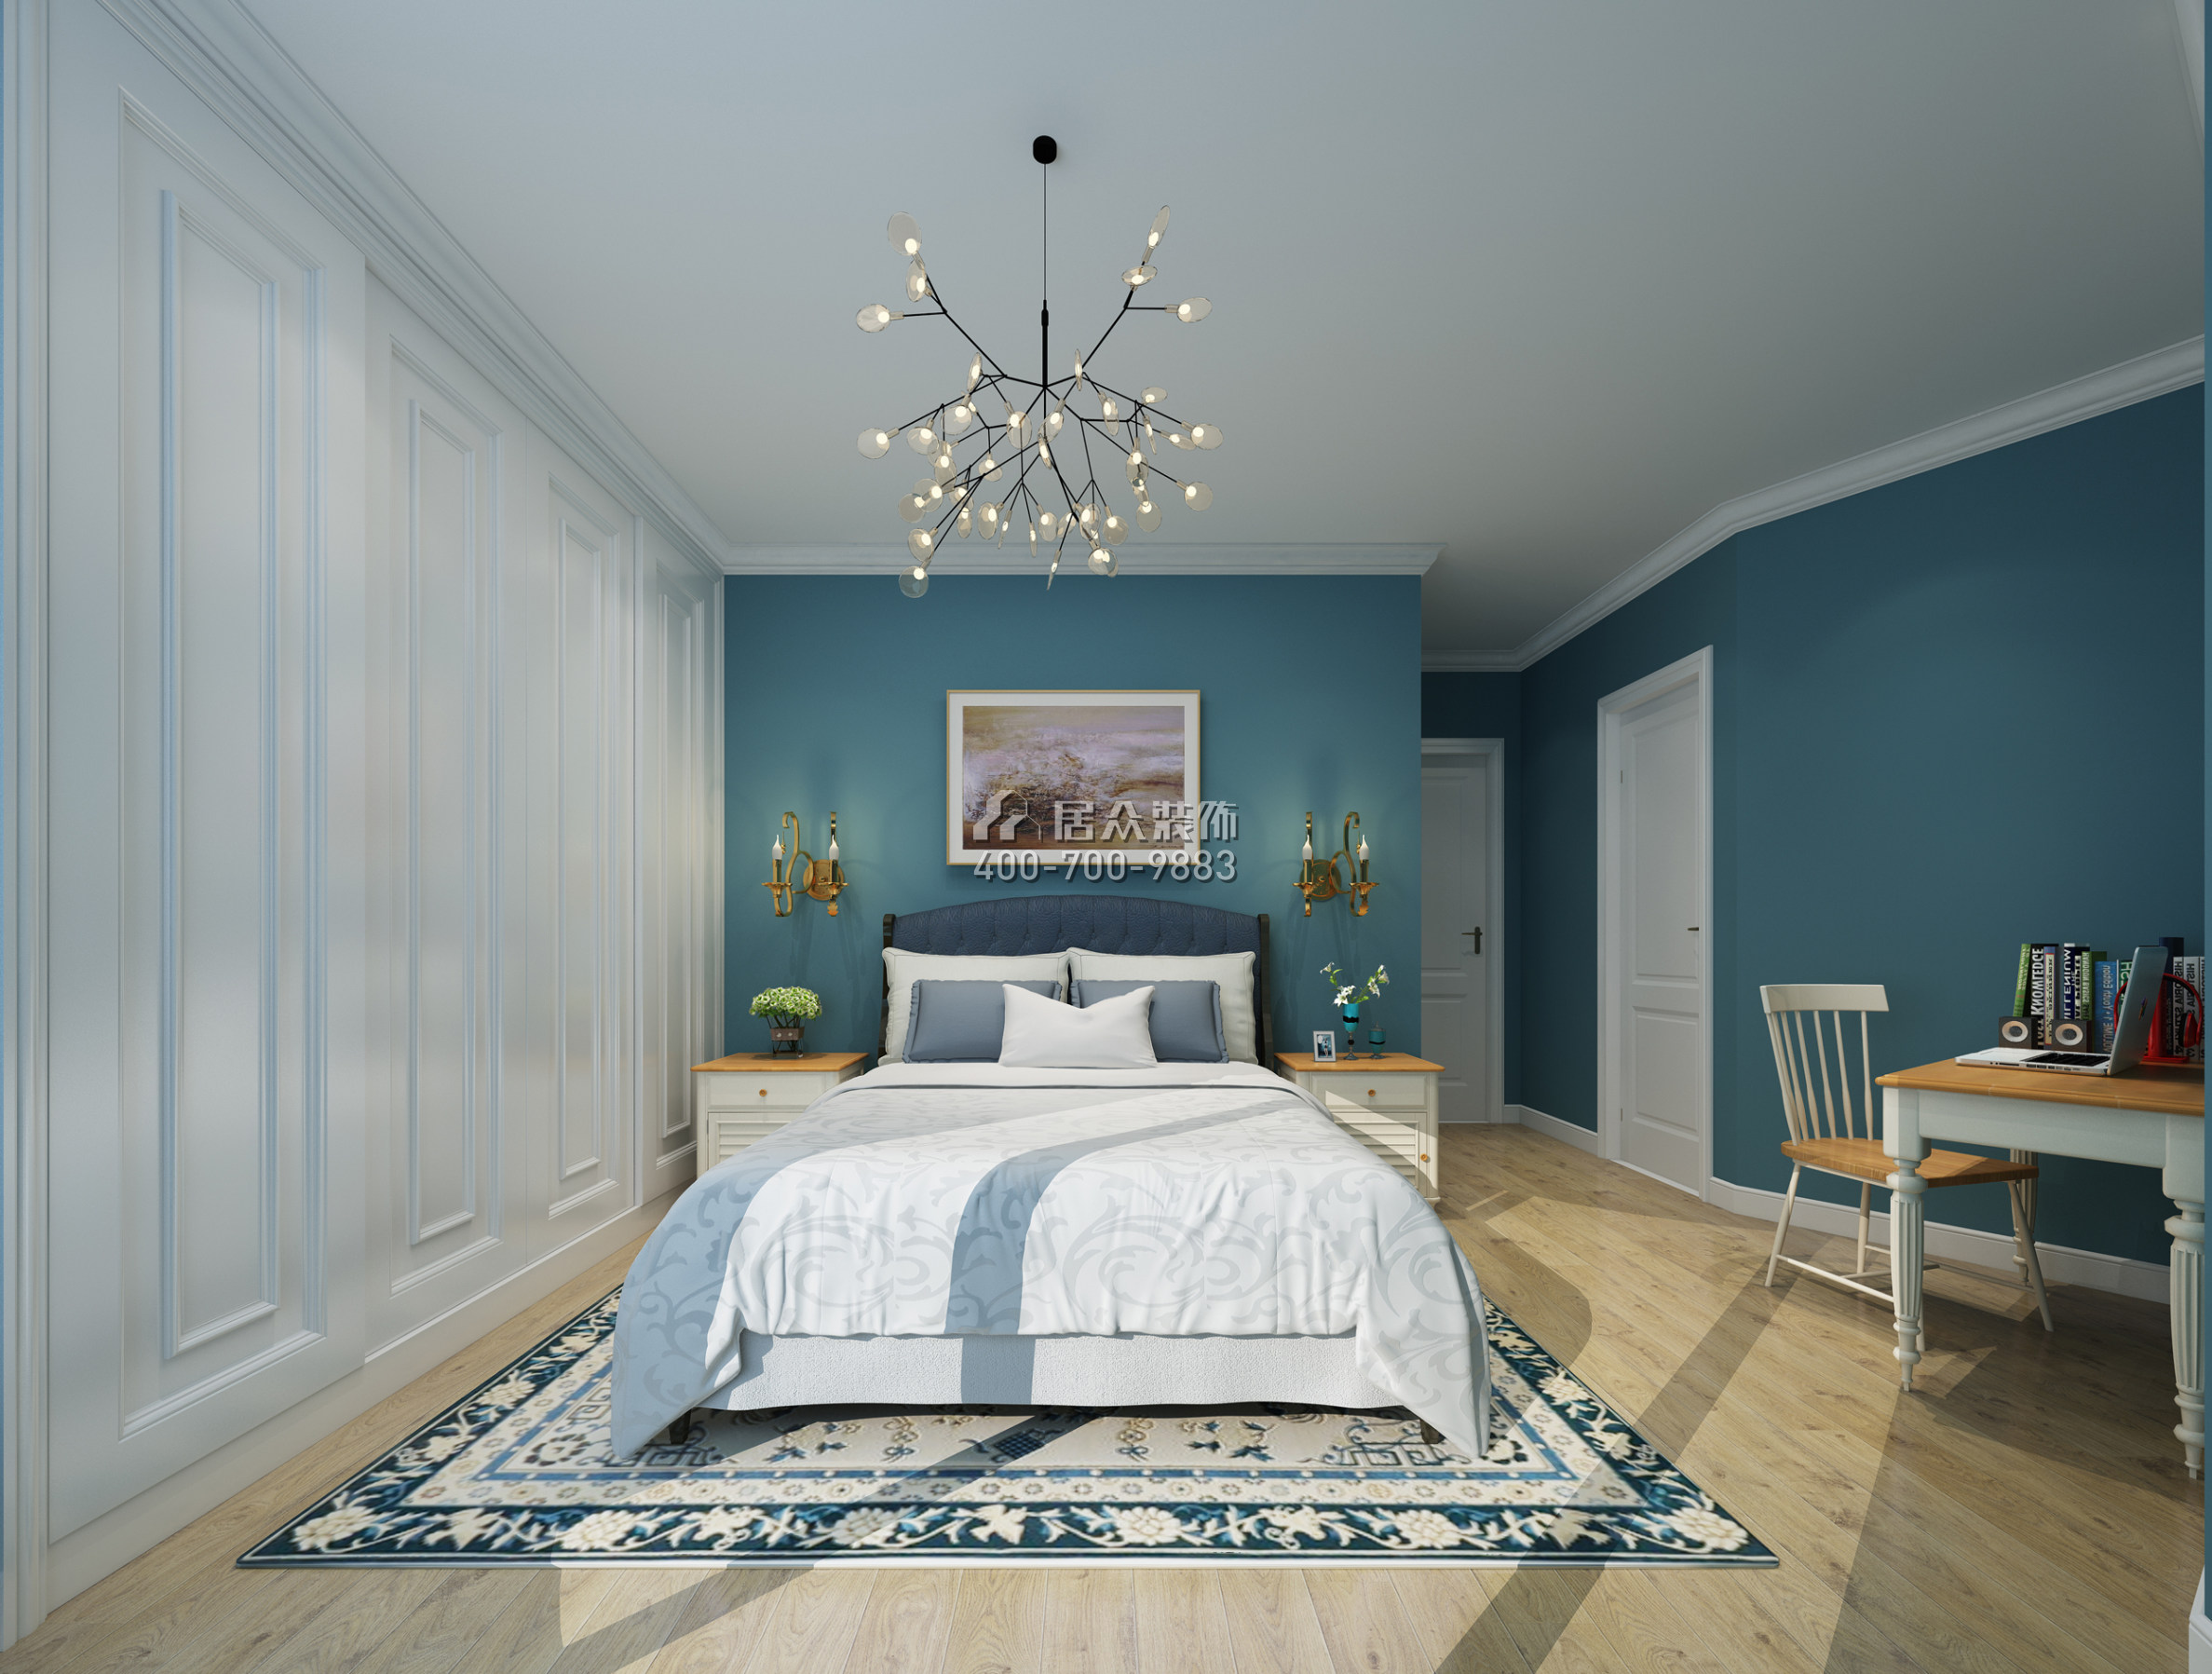 益田豪园居138平方米北欧风格平层户型卧室装修效果图